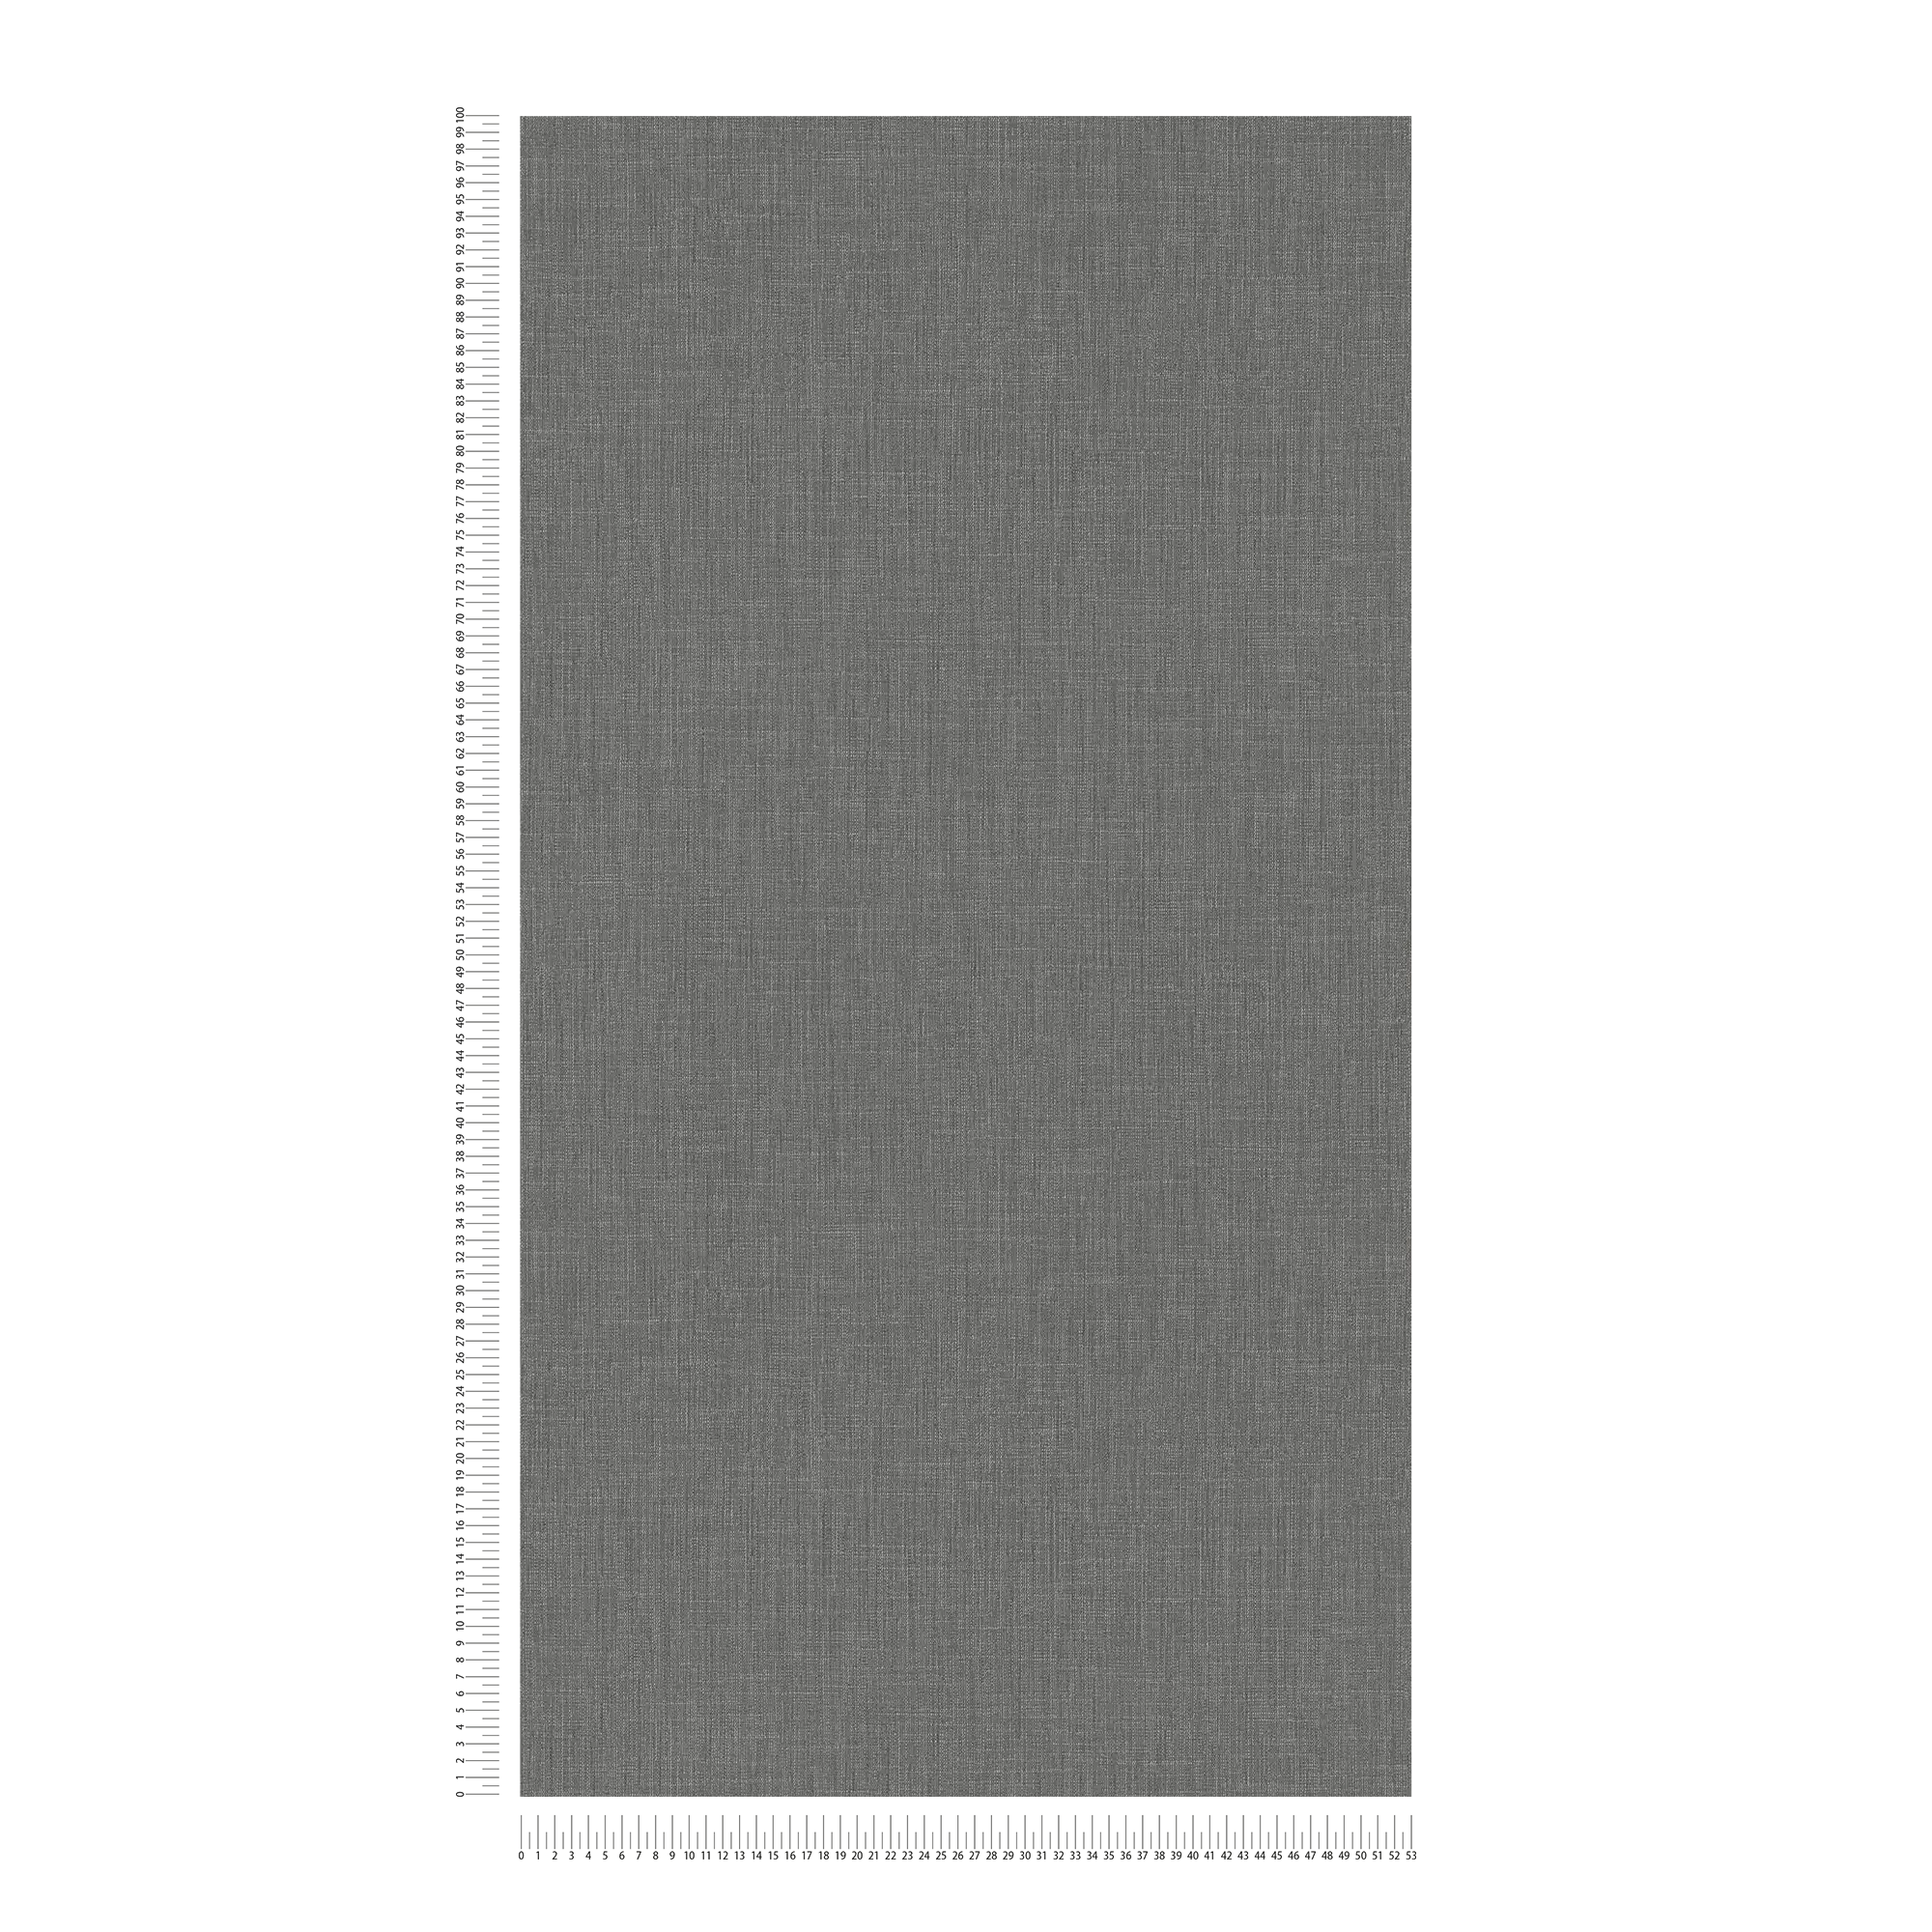             Papier peint gris chiné avec design textile style bouclé
        